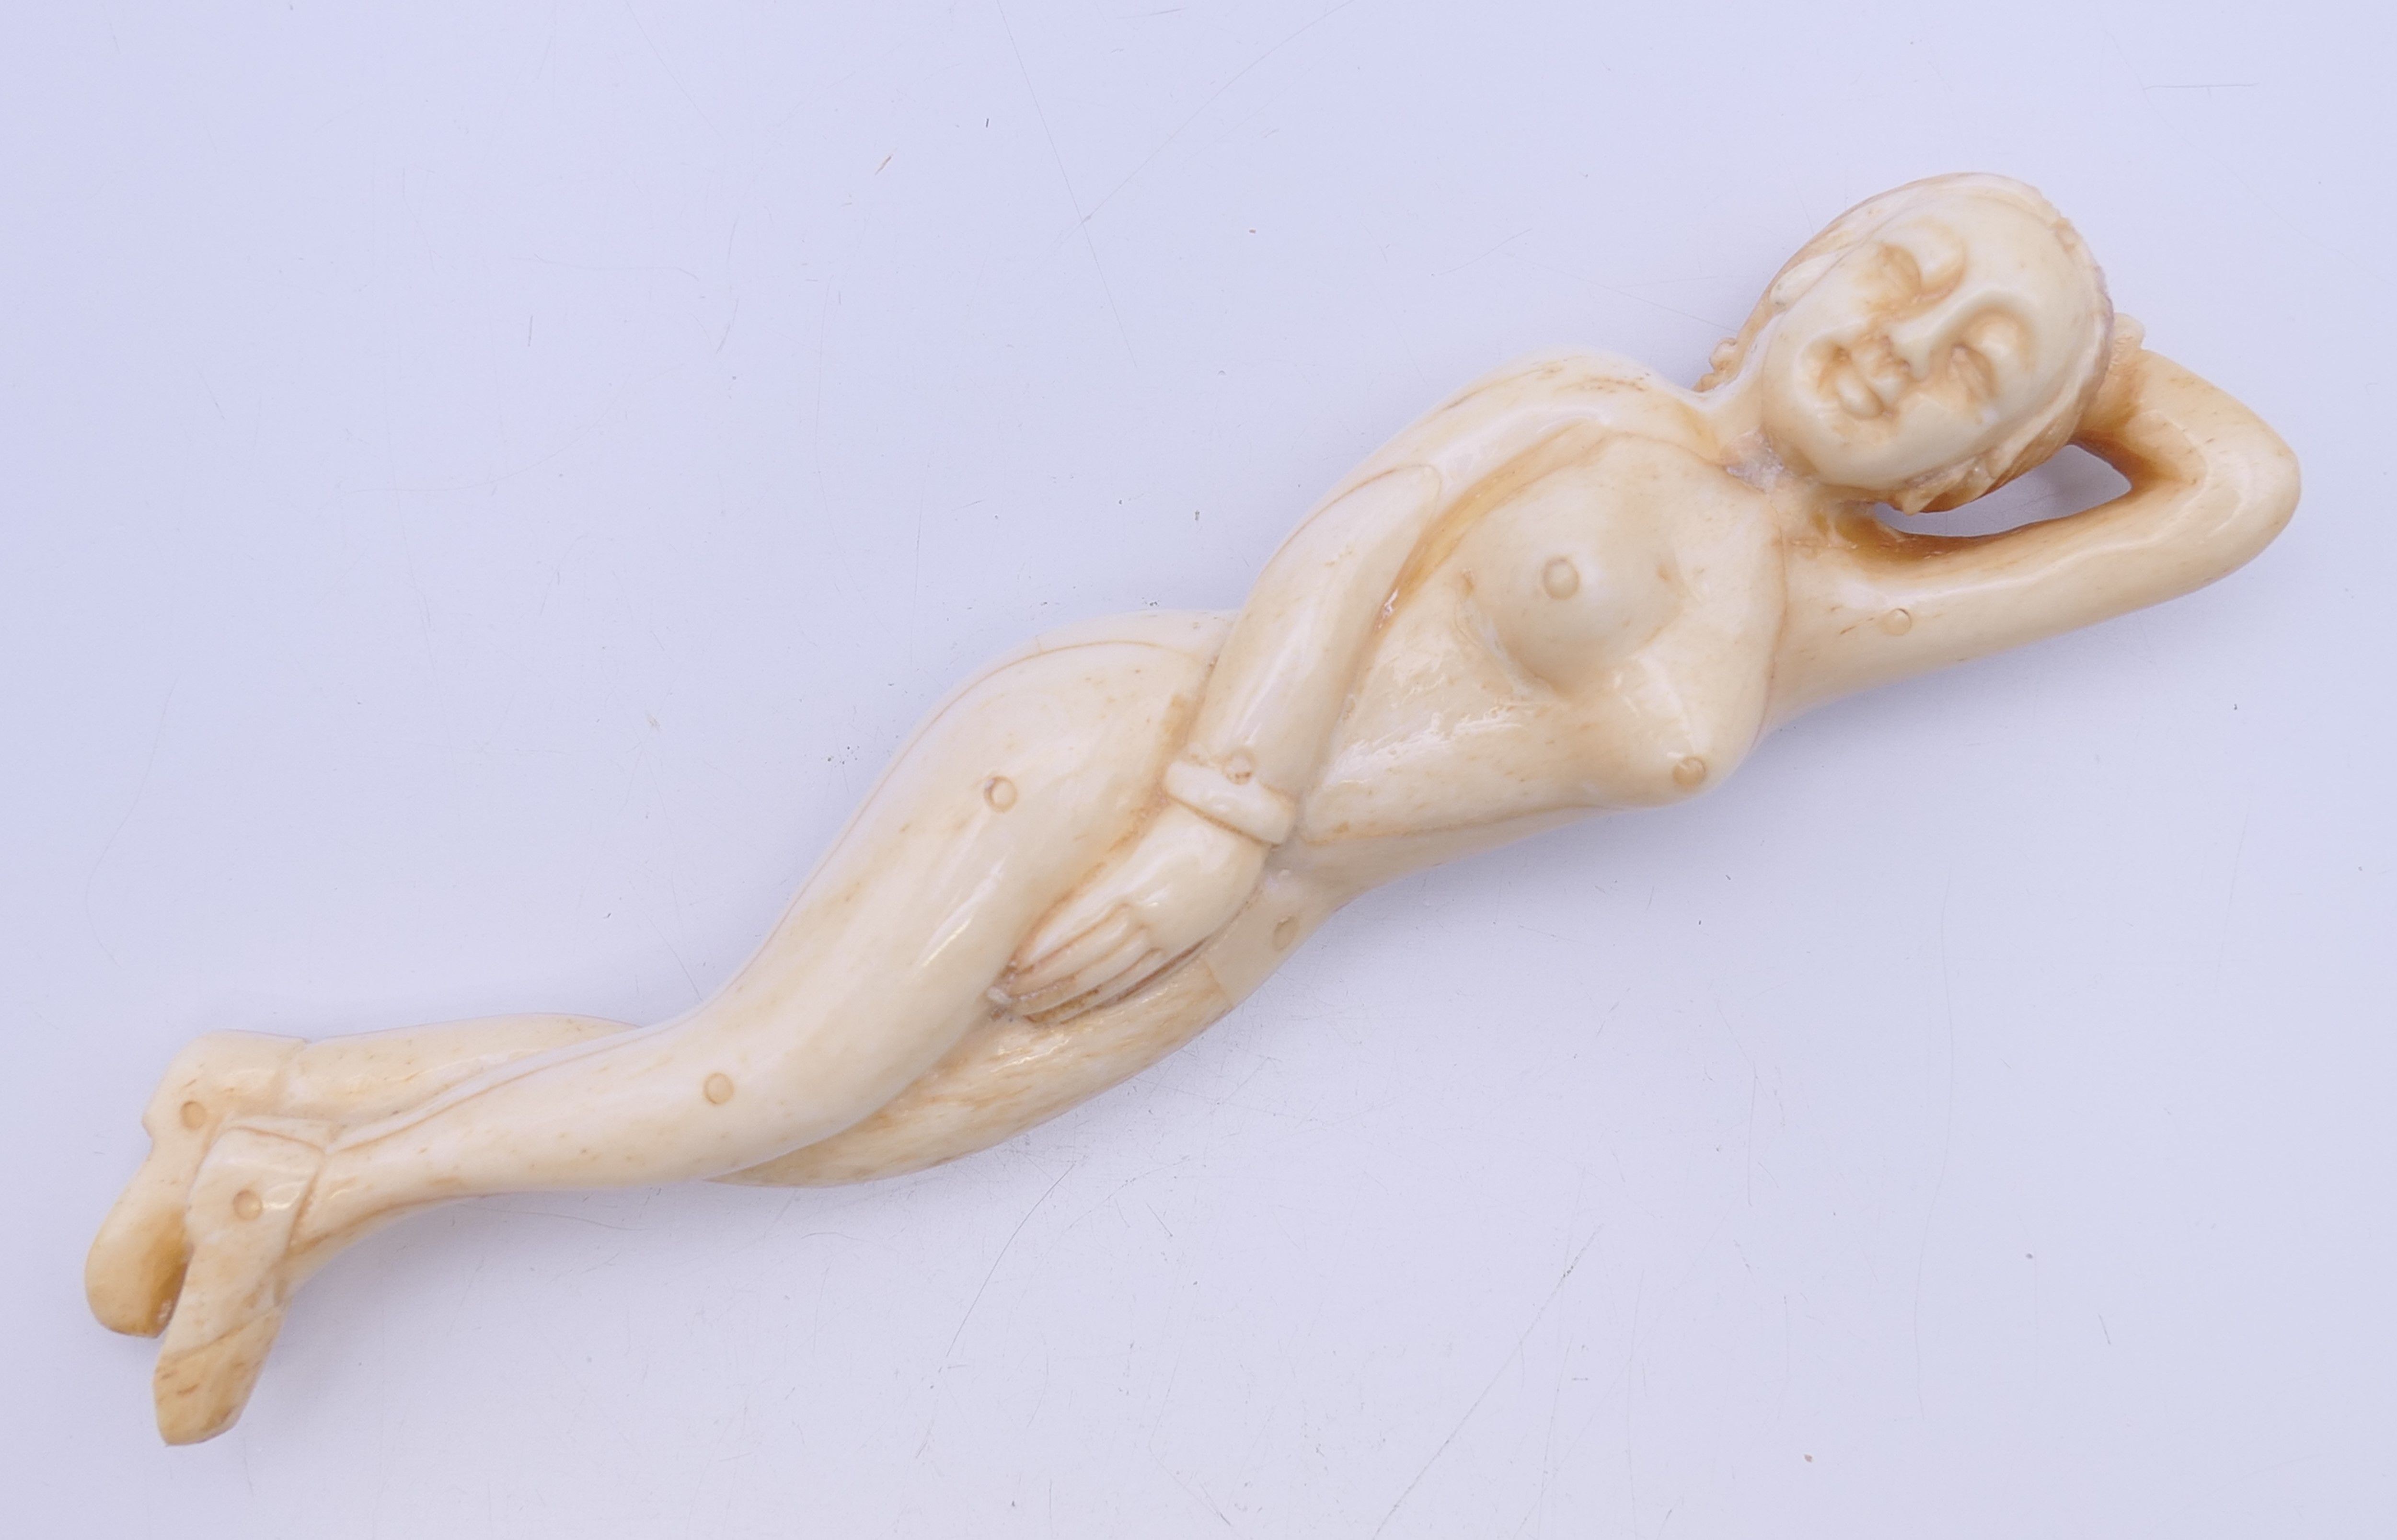 A bone model of a doctor's figure 12.5 cm long.